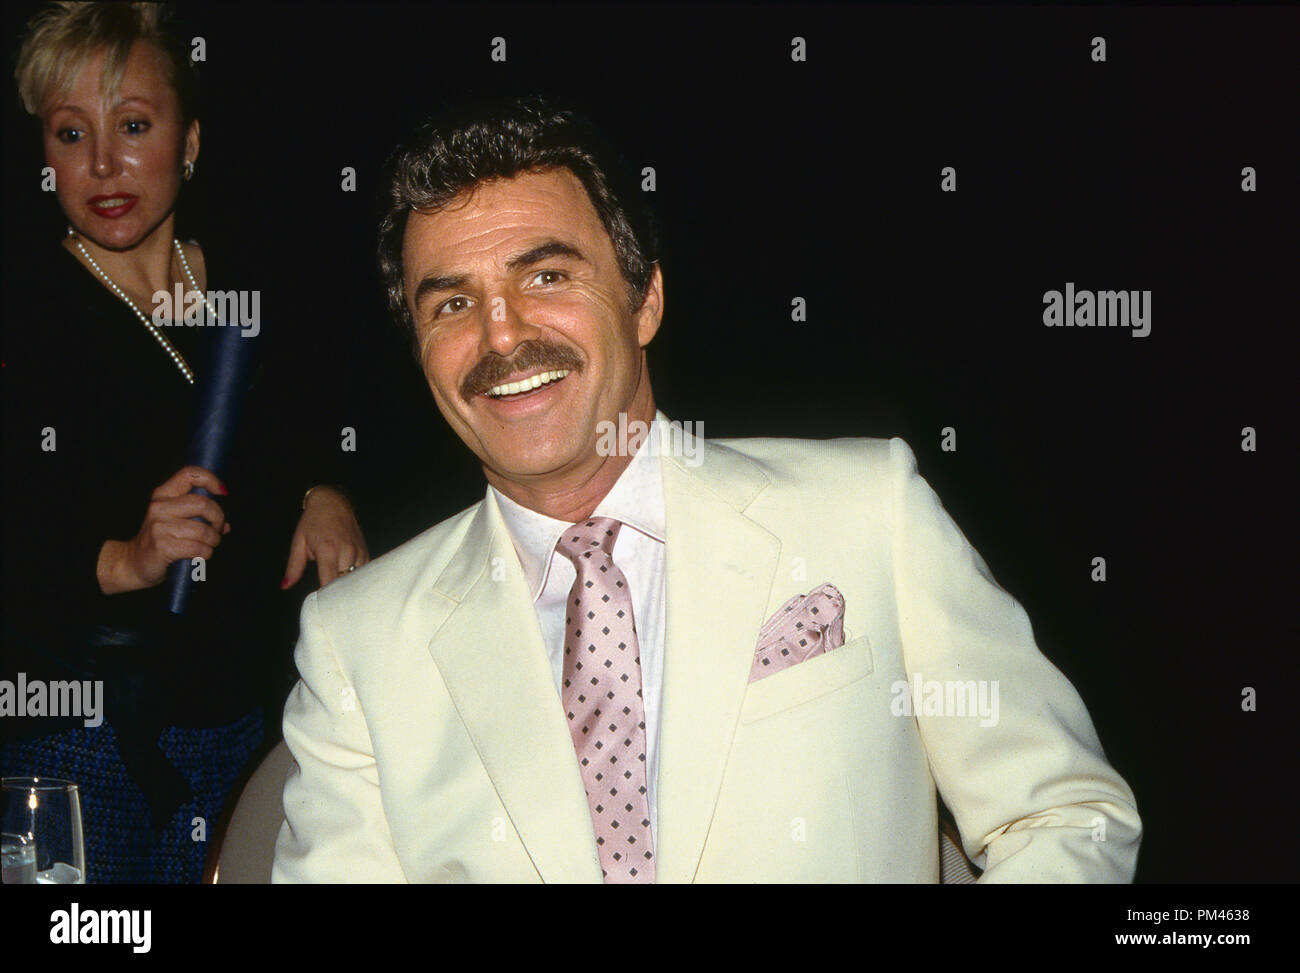 Burt Reynolds circa 1989. Datei Referenz Nr. 1052 013 THA © GFS/Hollywood Archiv - Alle Rechte vorbehalten. Stockfoto